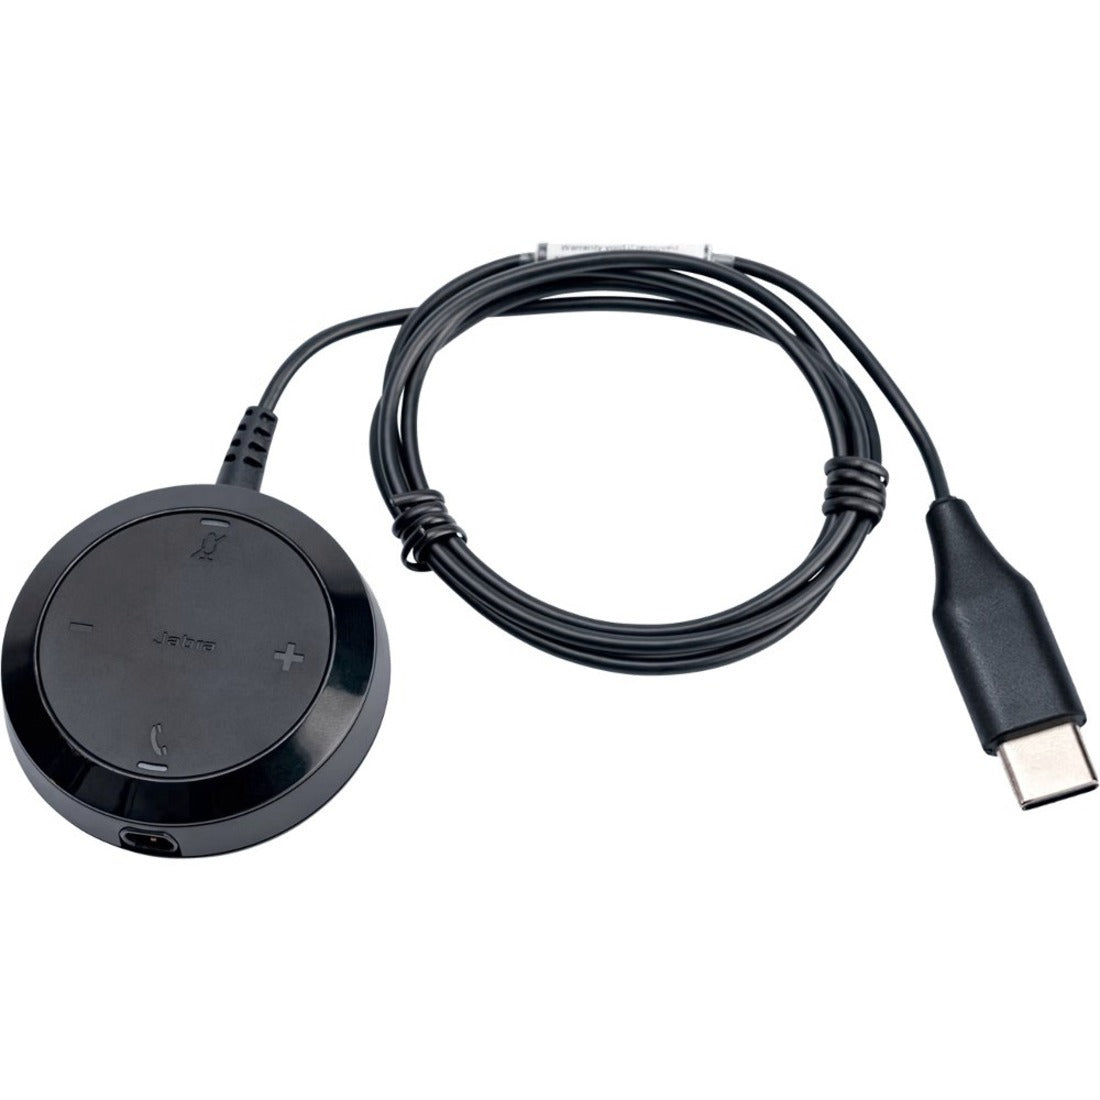 Jabra 14208-35 Evolve 30 II Link Controller, Black for Headset